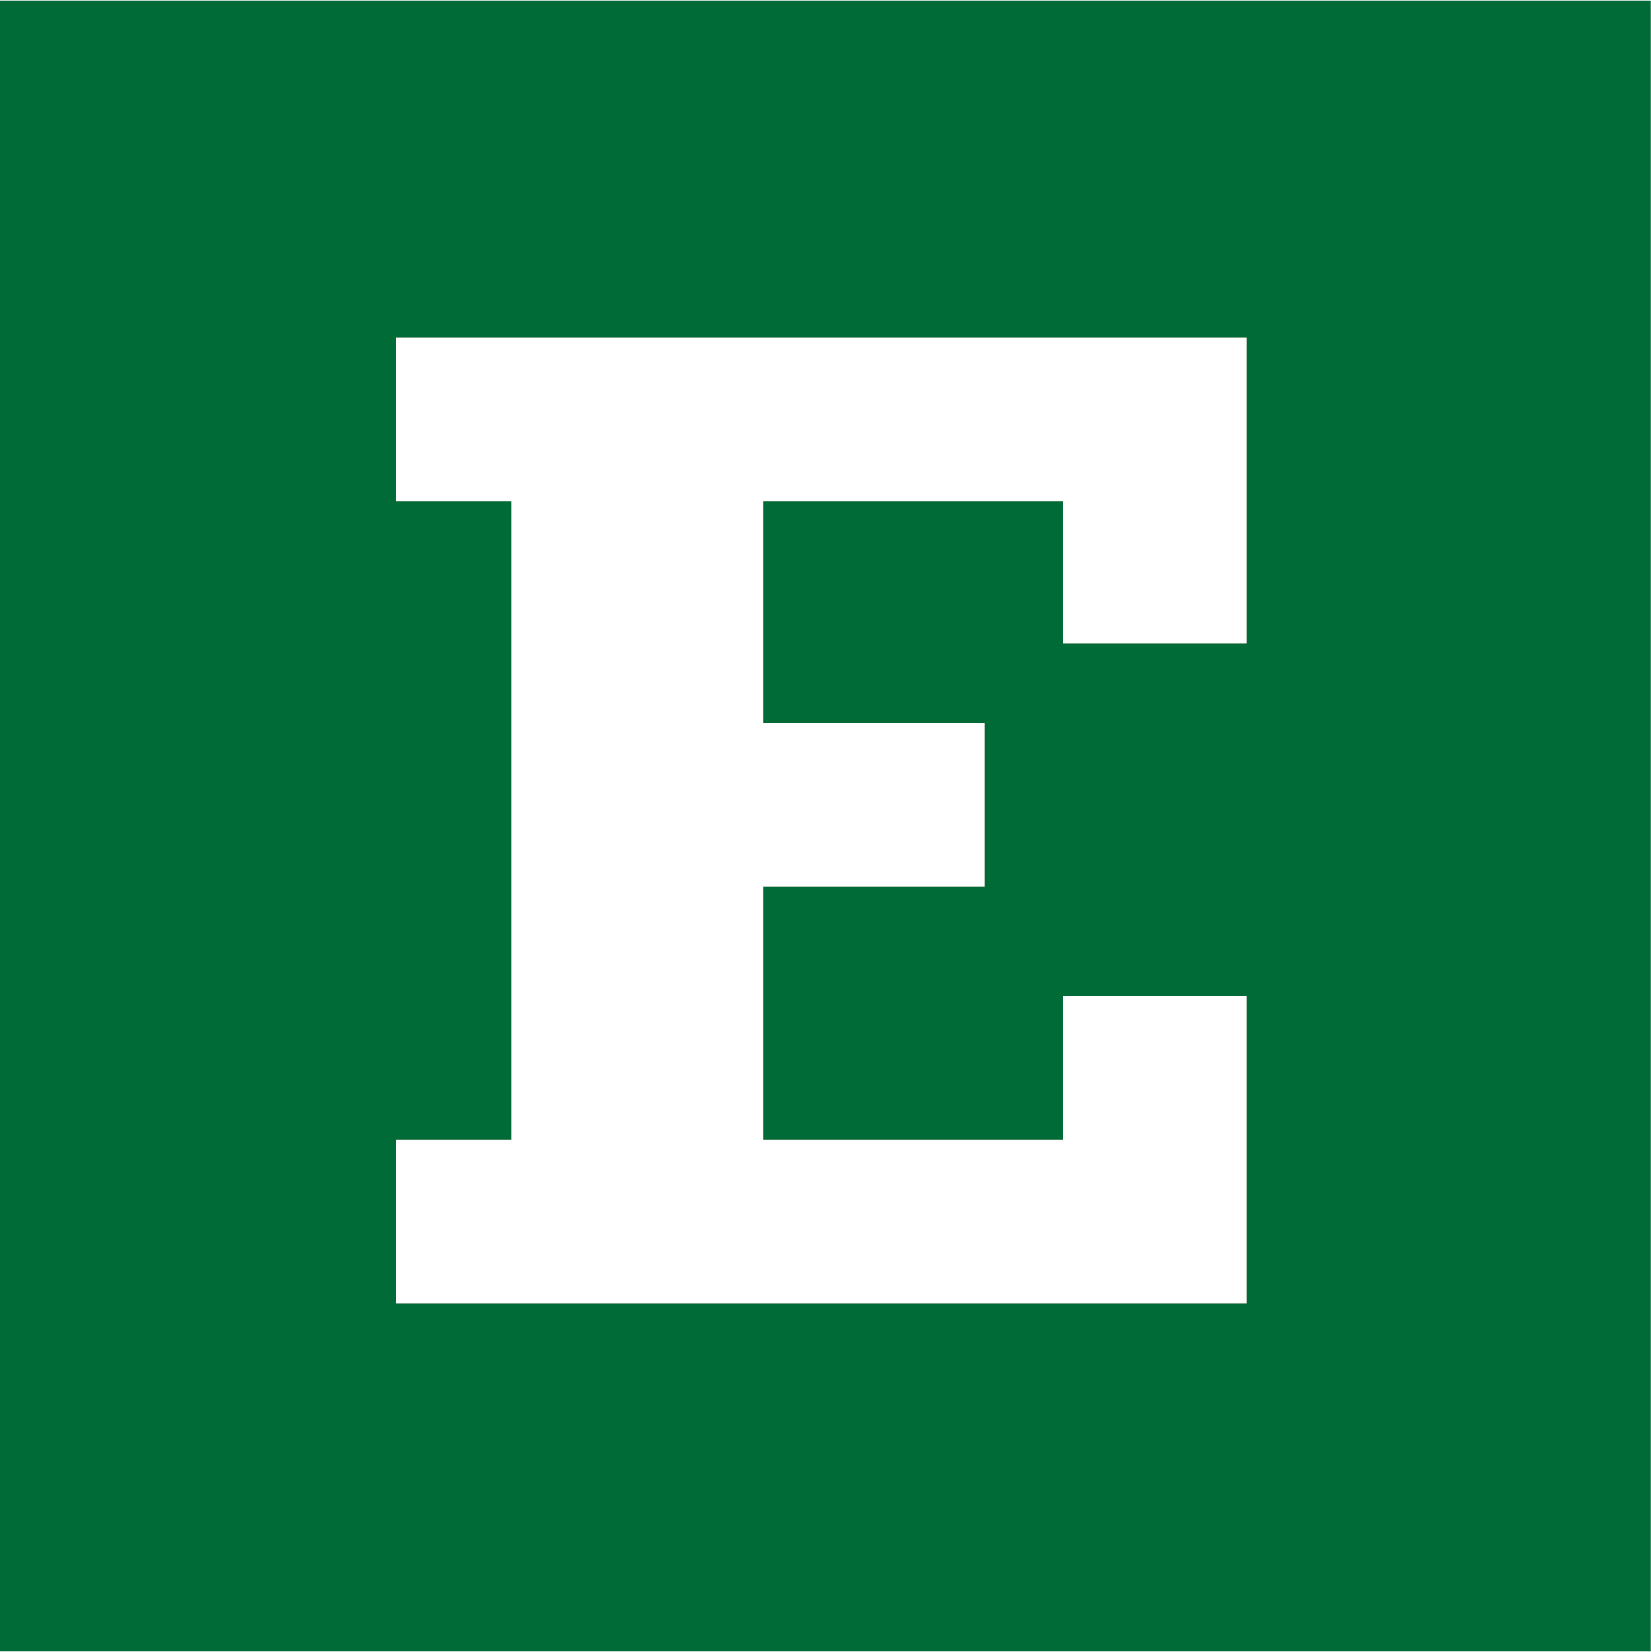 EMU Logo